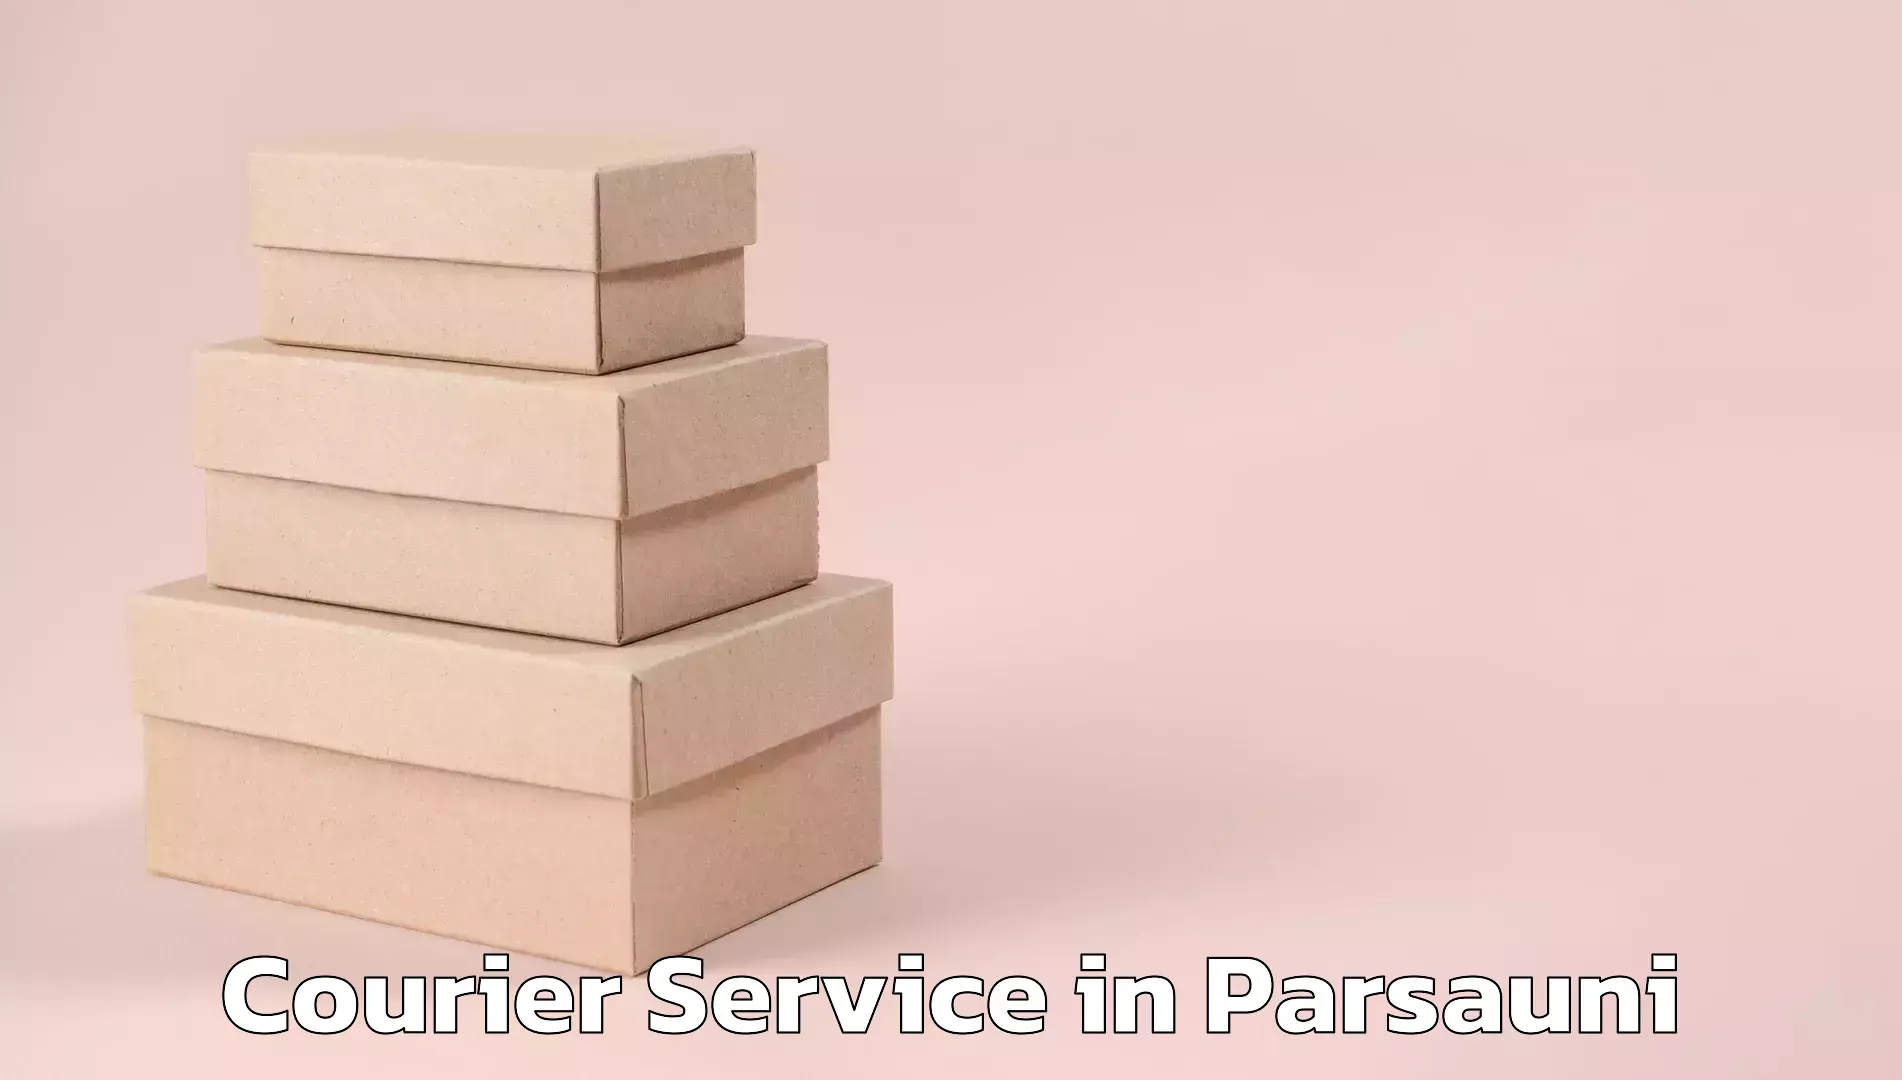 Efficient parcel service in Parsauni